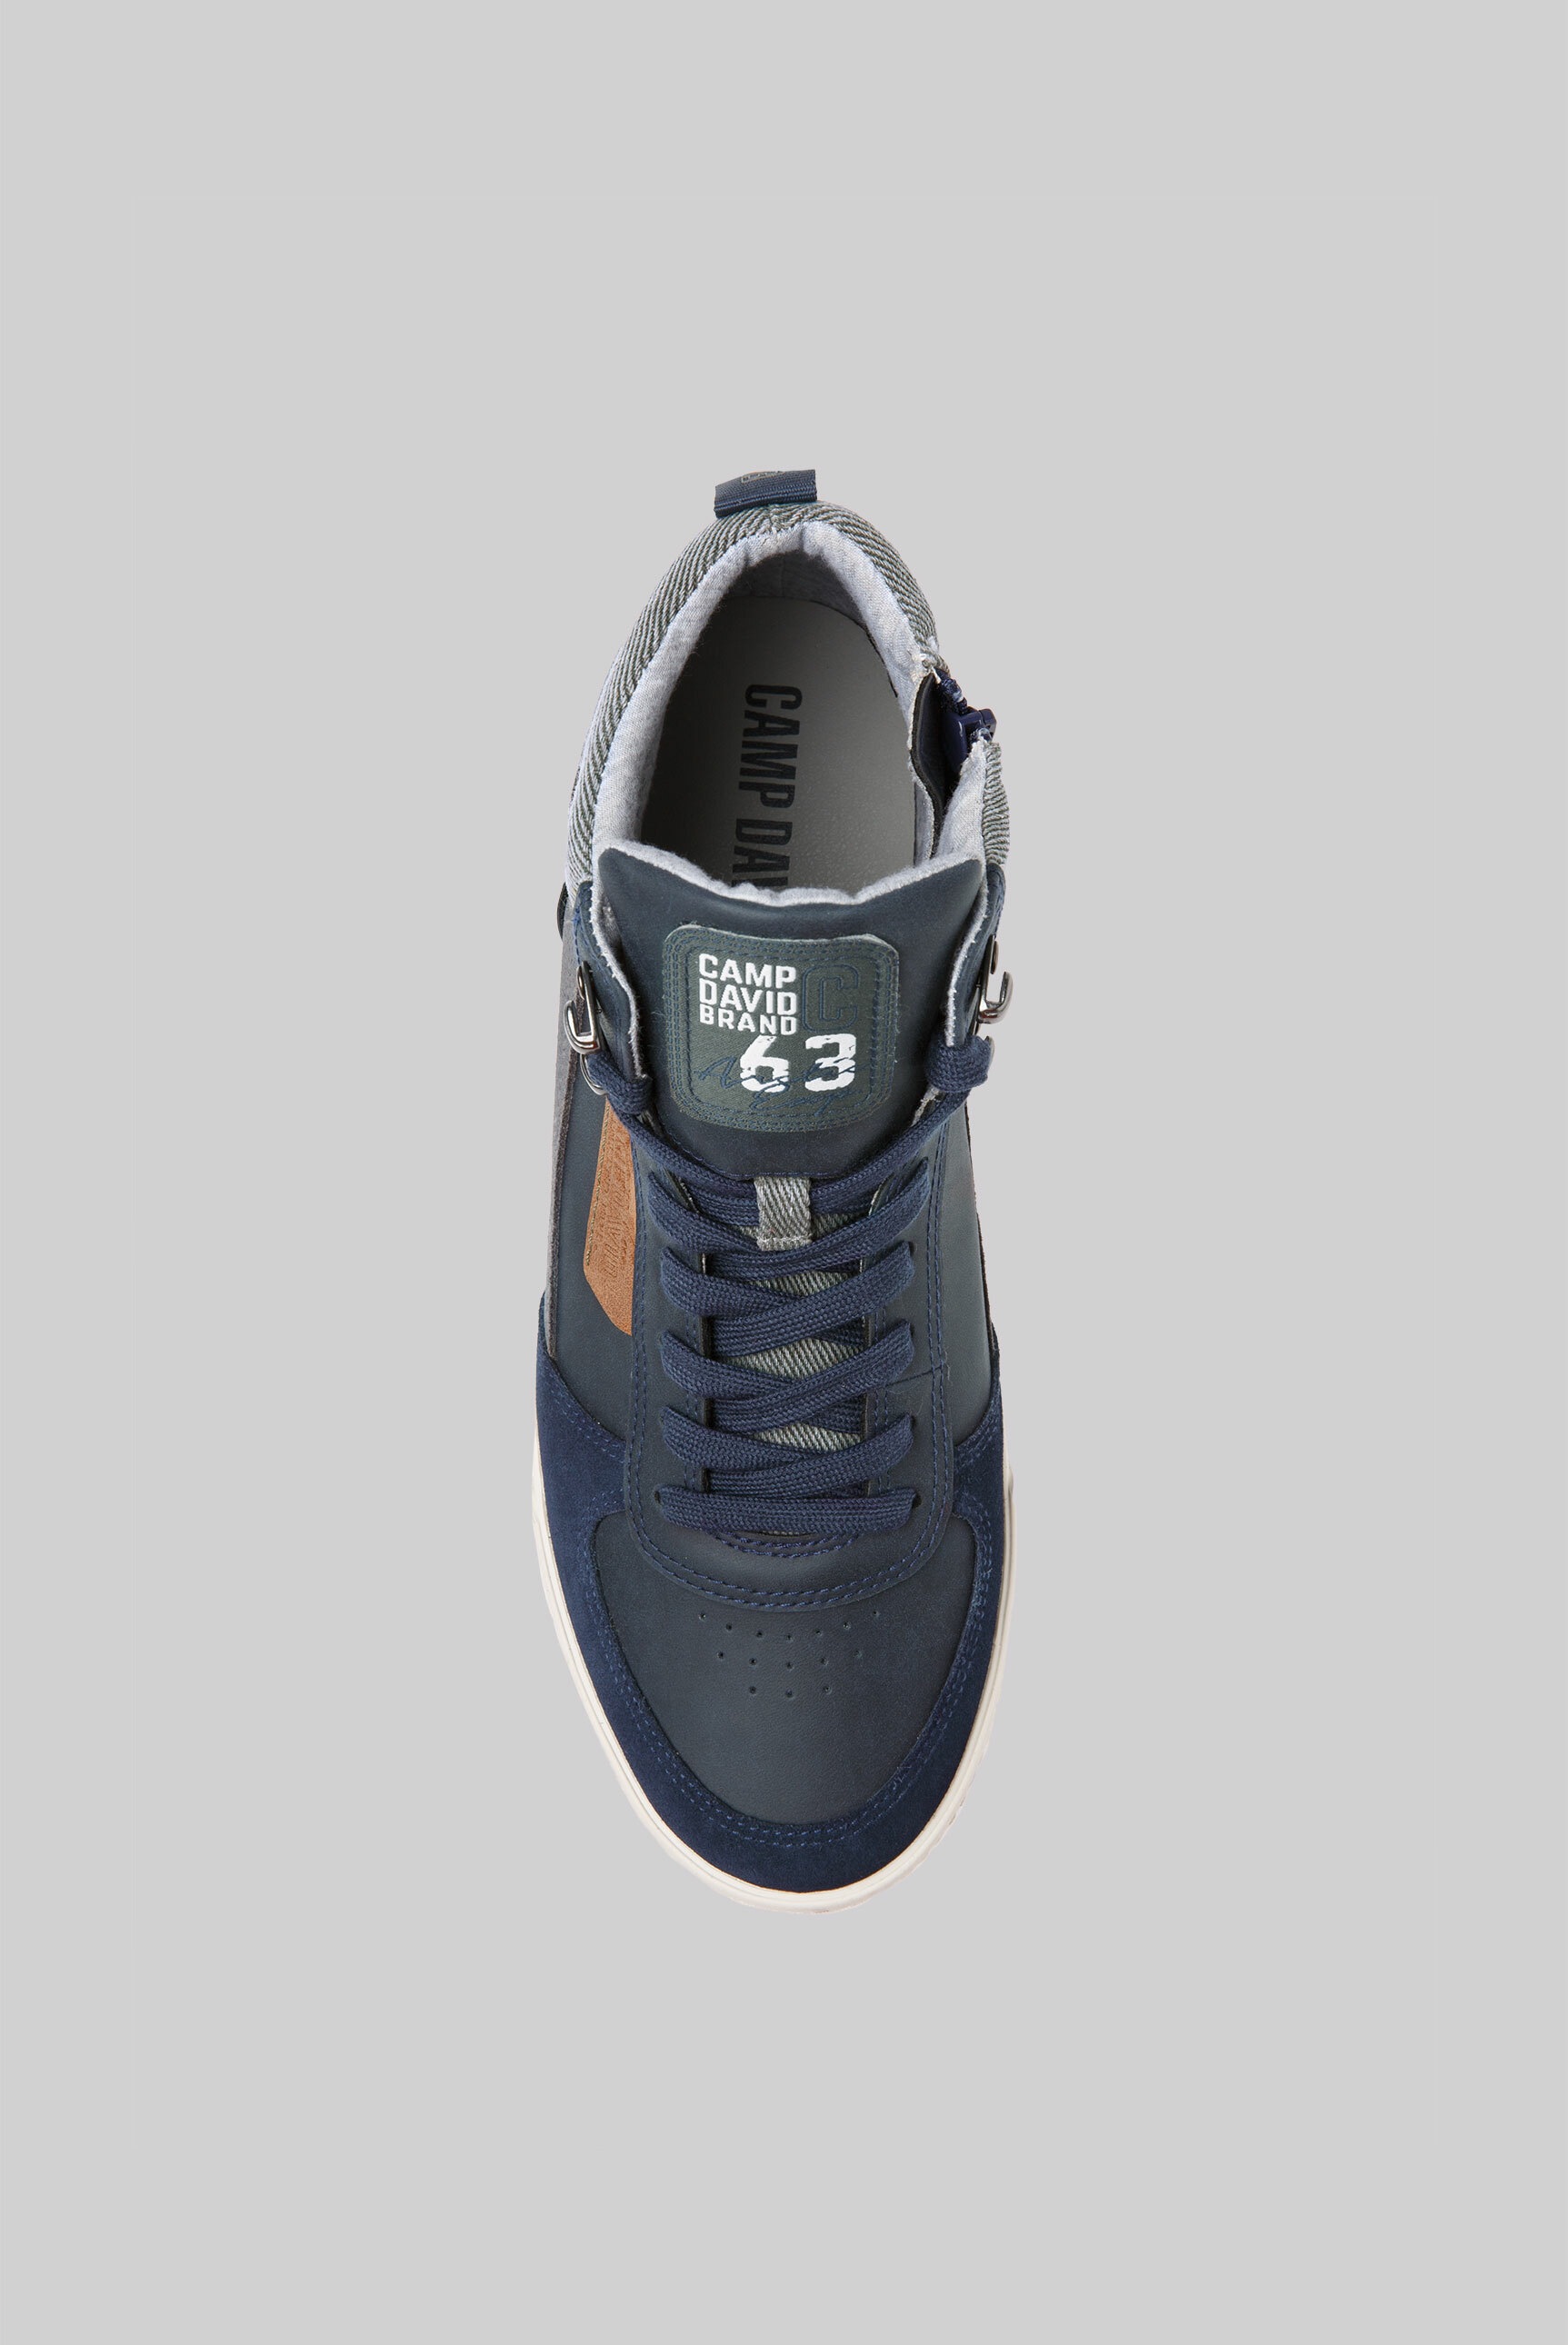 CAMP DAVID Sneaker, online BAUR kaufen innenliegenden mit Reißverschluss 